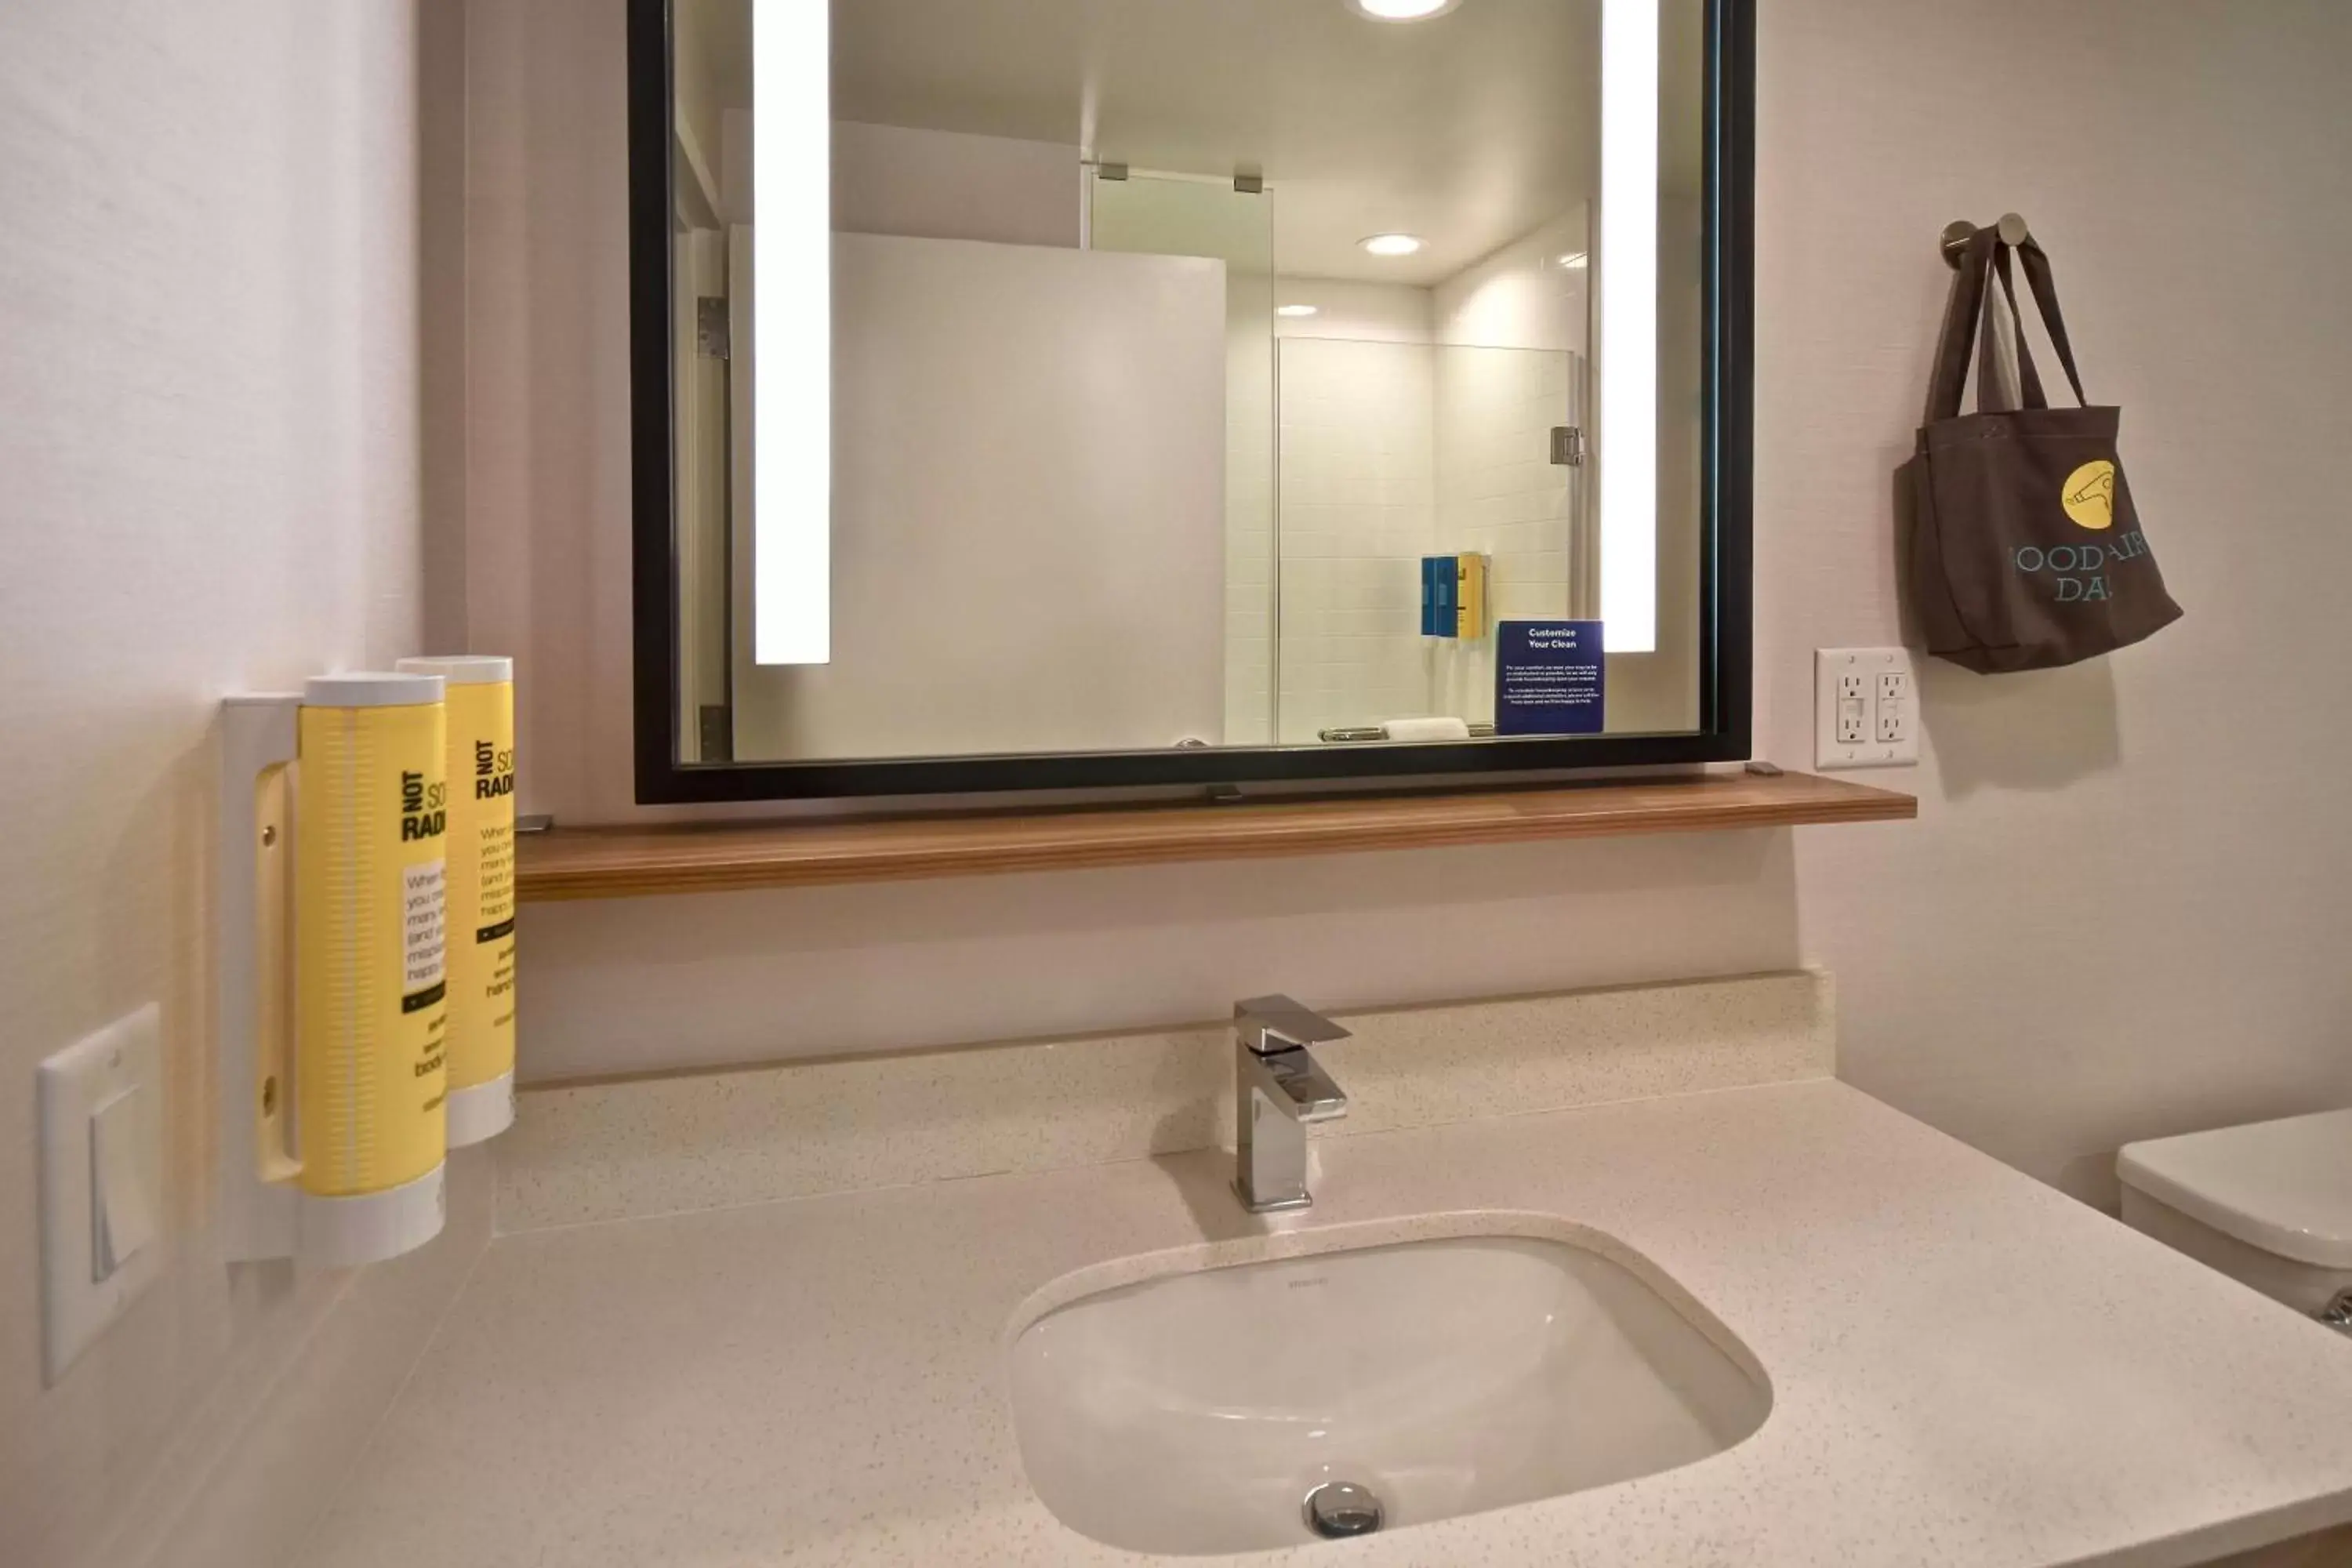 Bathroom in Tru By Hilton Concord, Nh